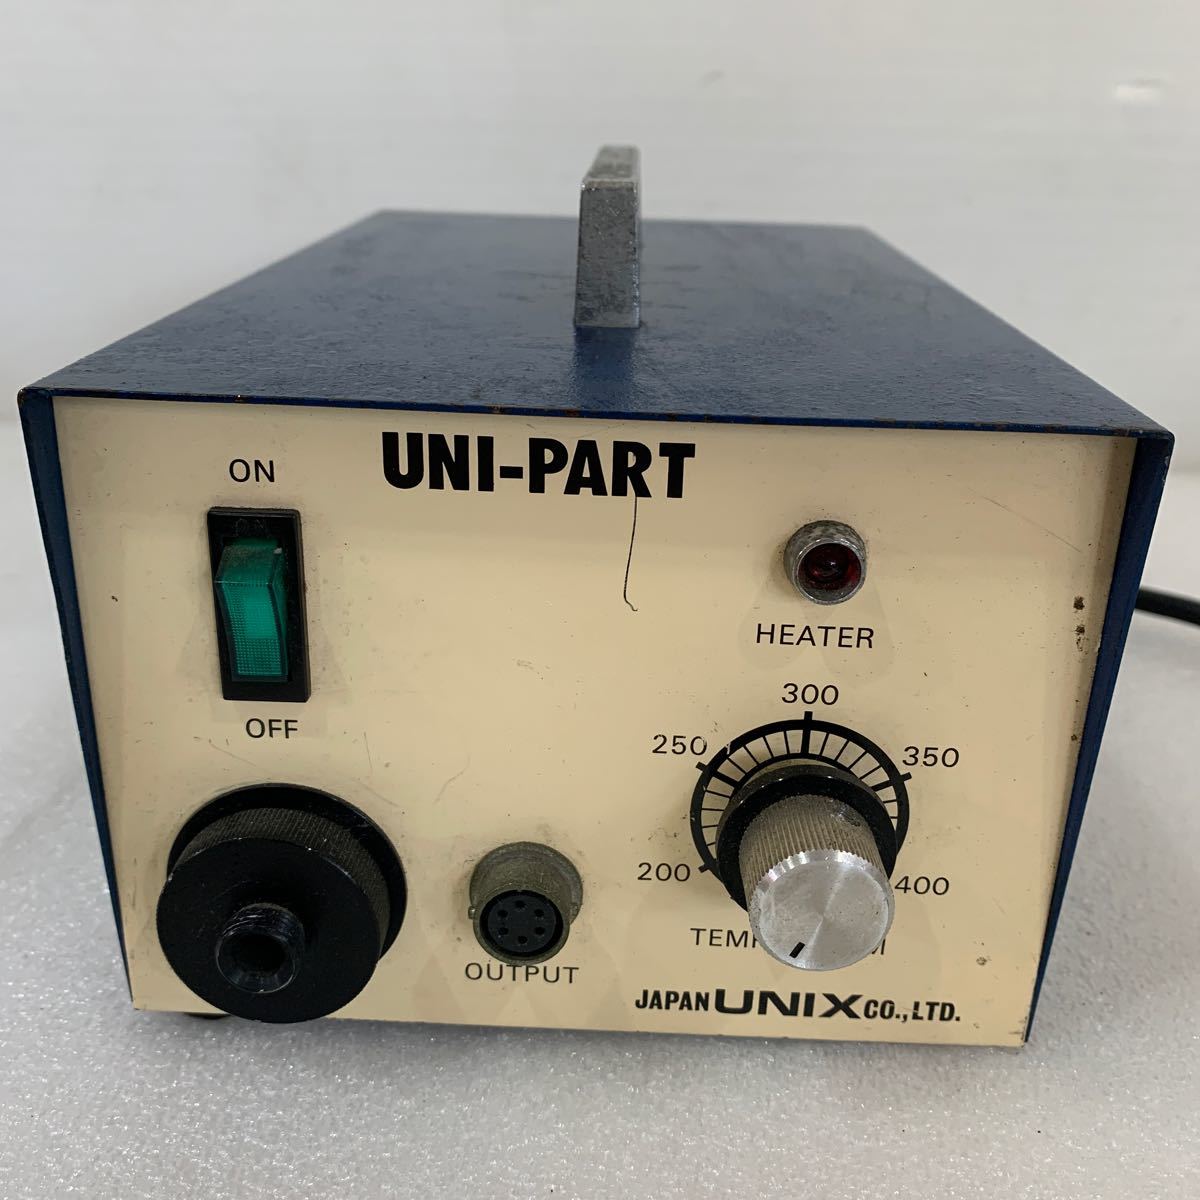 QW3265 JAPAN UNIX UNI-PART рукоятка da. брать . удаление оборудование * электризация проверка только Junk 0109